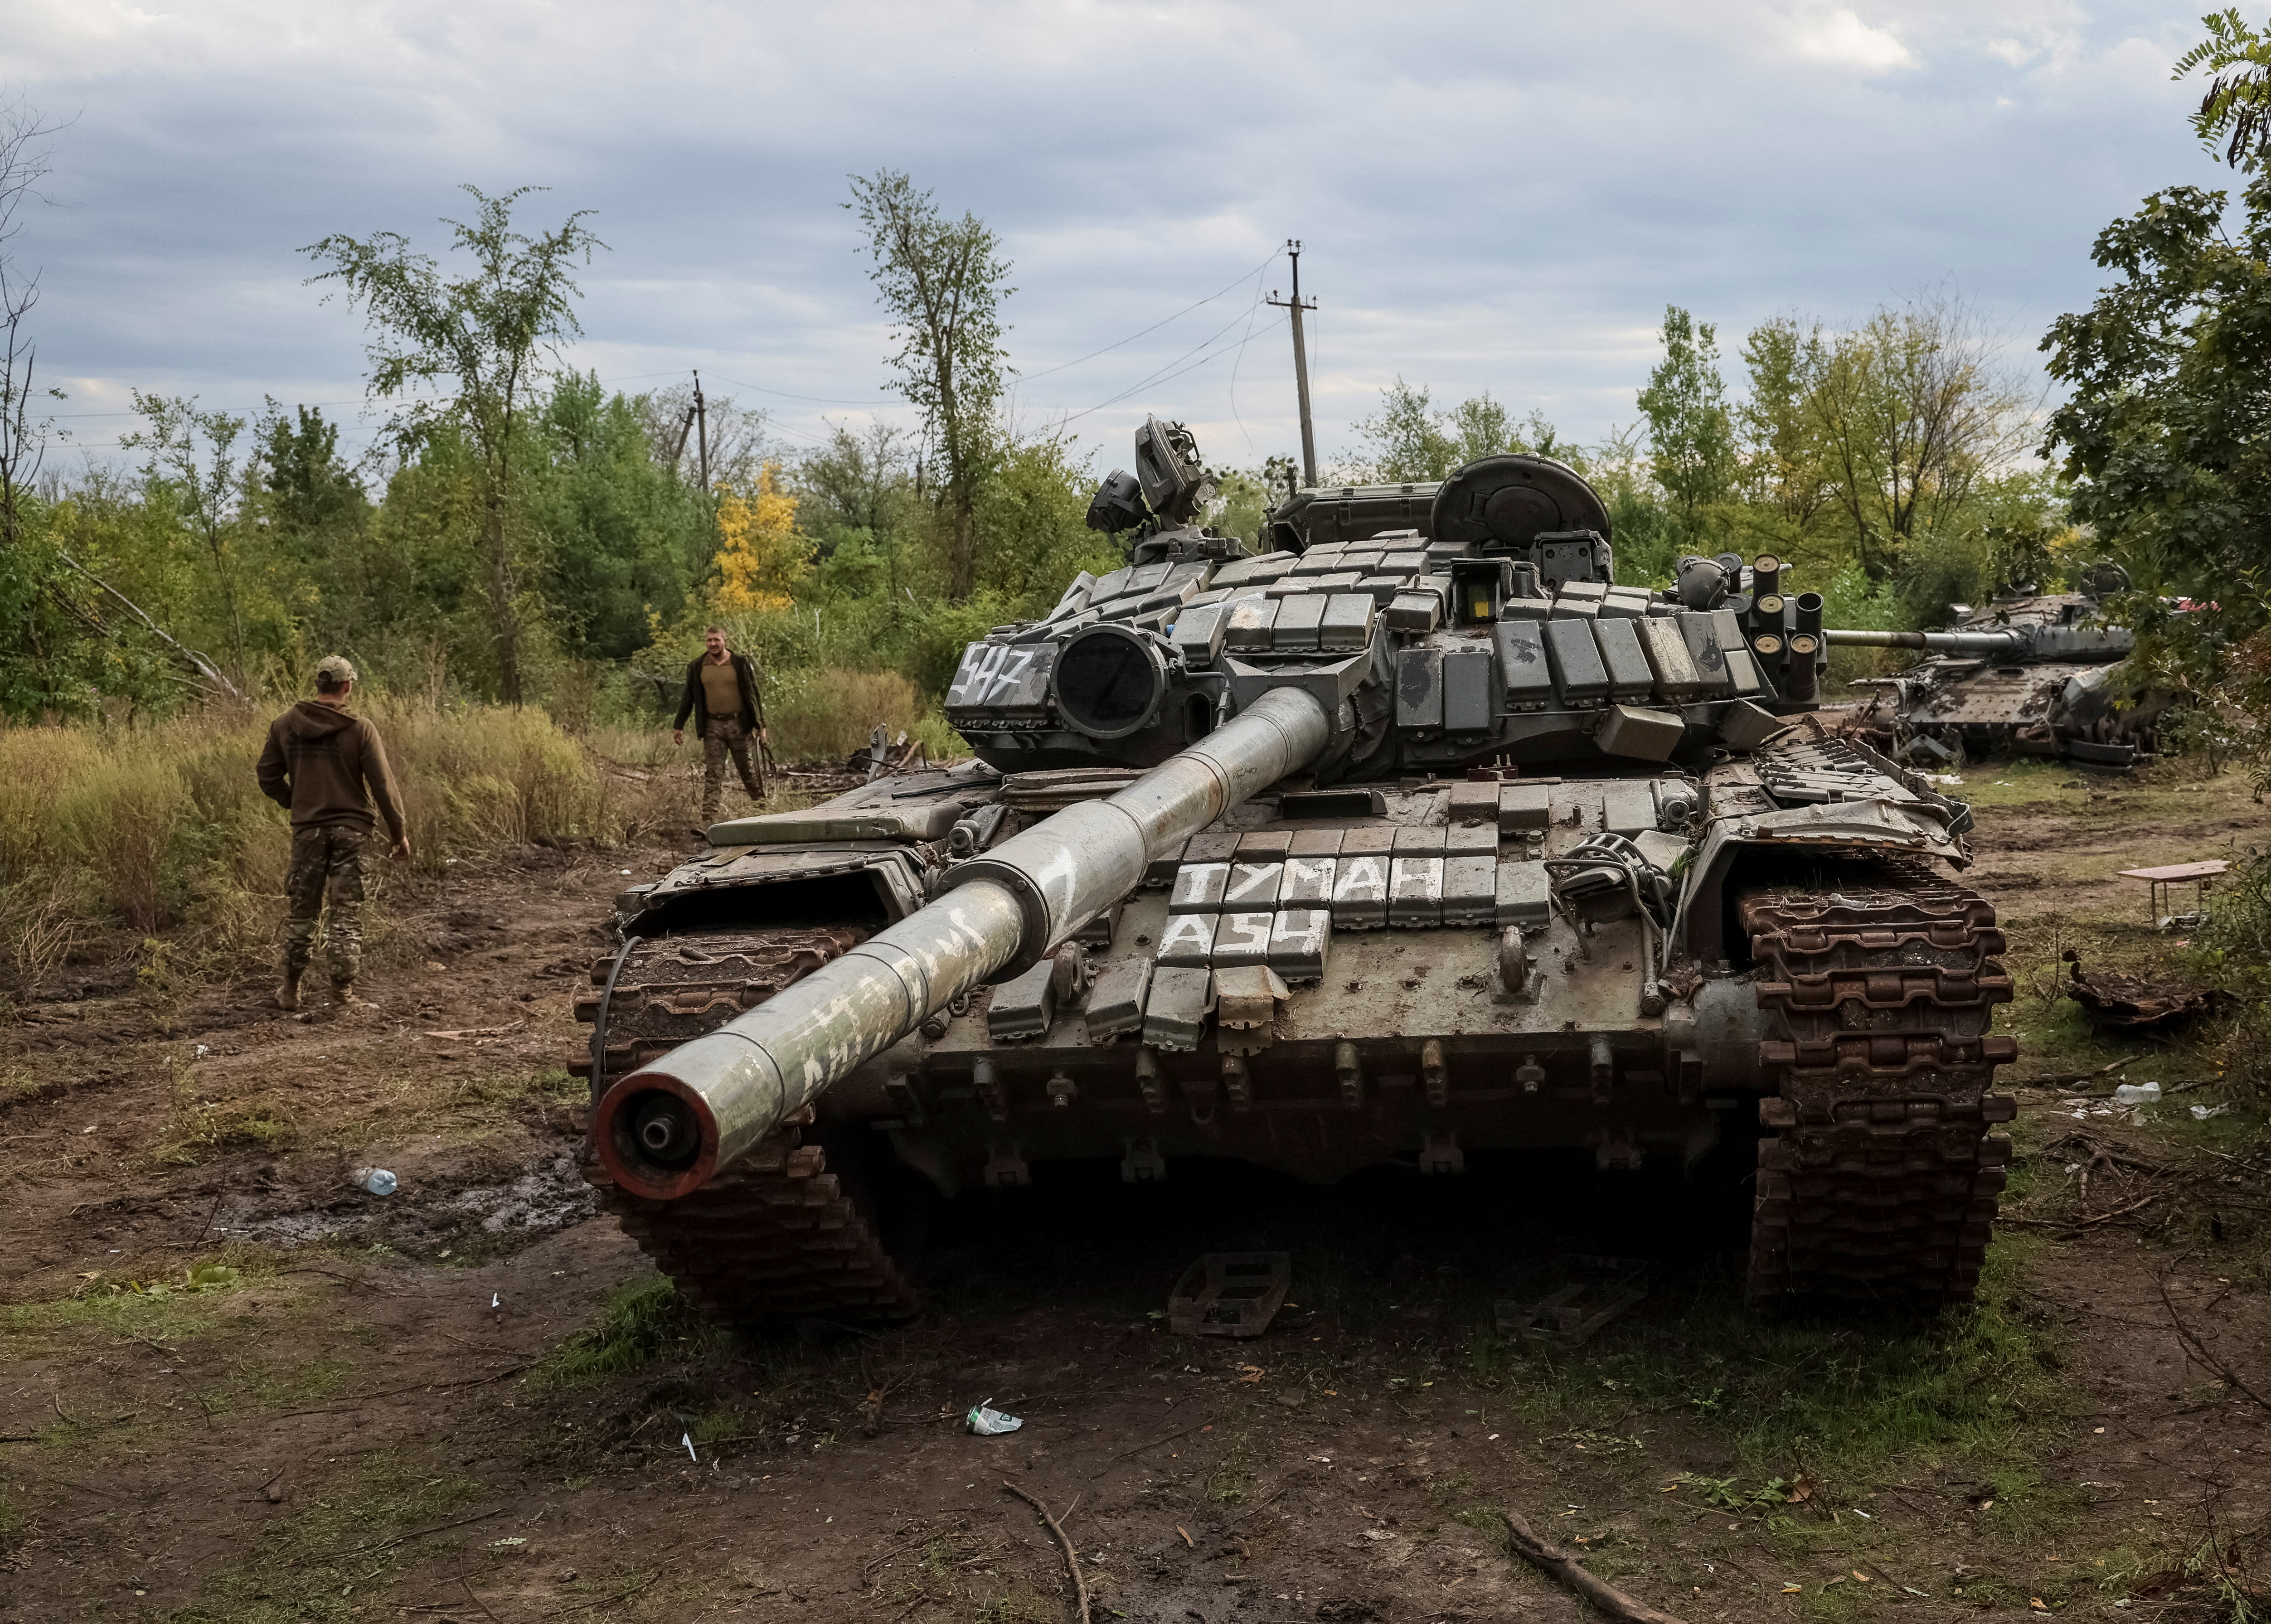 Xe tăng Nga luôn được biết đến với sự thấu hiểu và nghiên cứu kỹ lưỡng về công nghệ xe tăng. Xem ngay những hình ảnh về xe tăng Nga và tìm hiểu thêm về sự tinh thông của nước Nga trong lĩnh vực này.